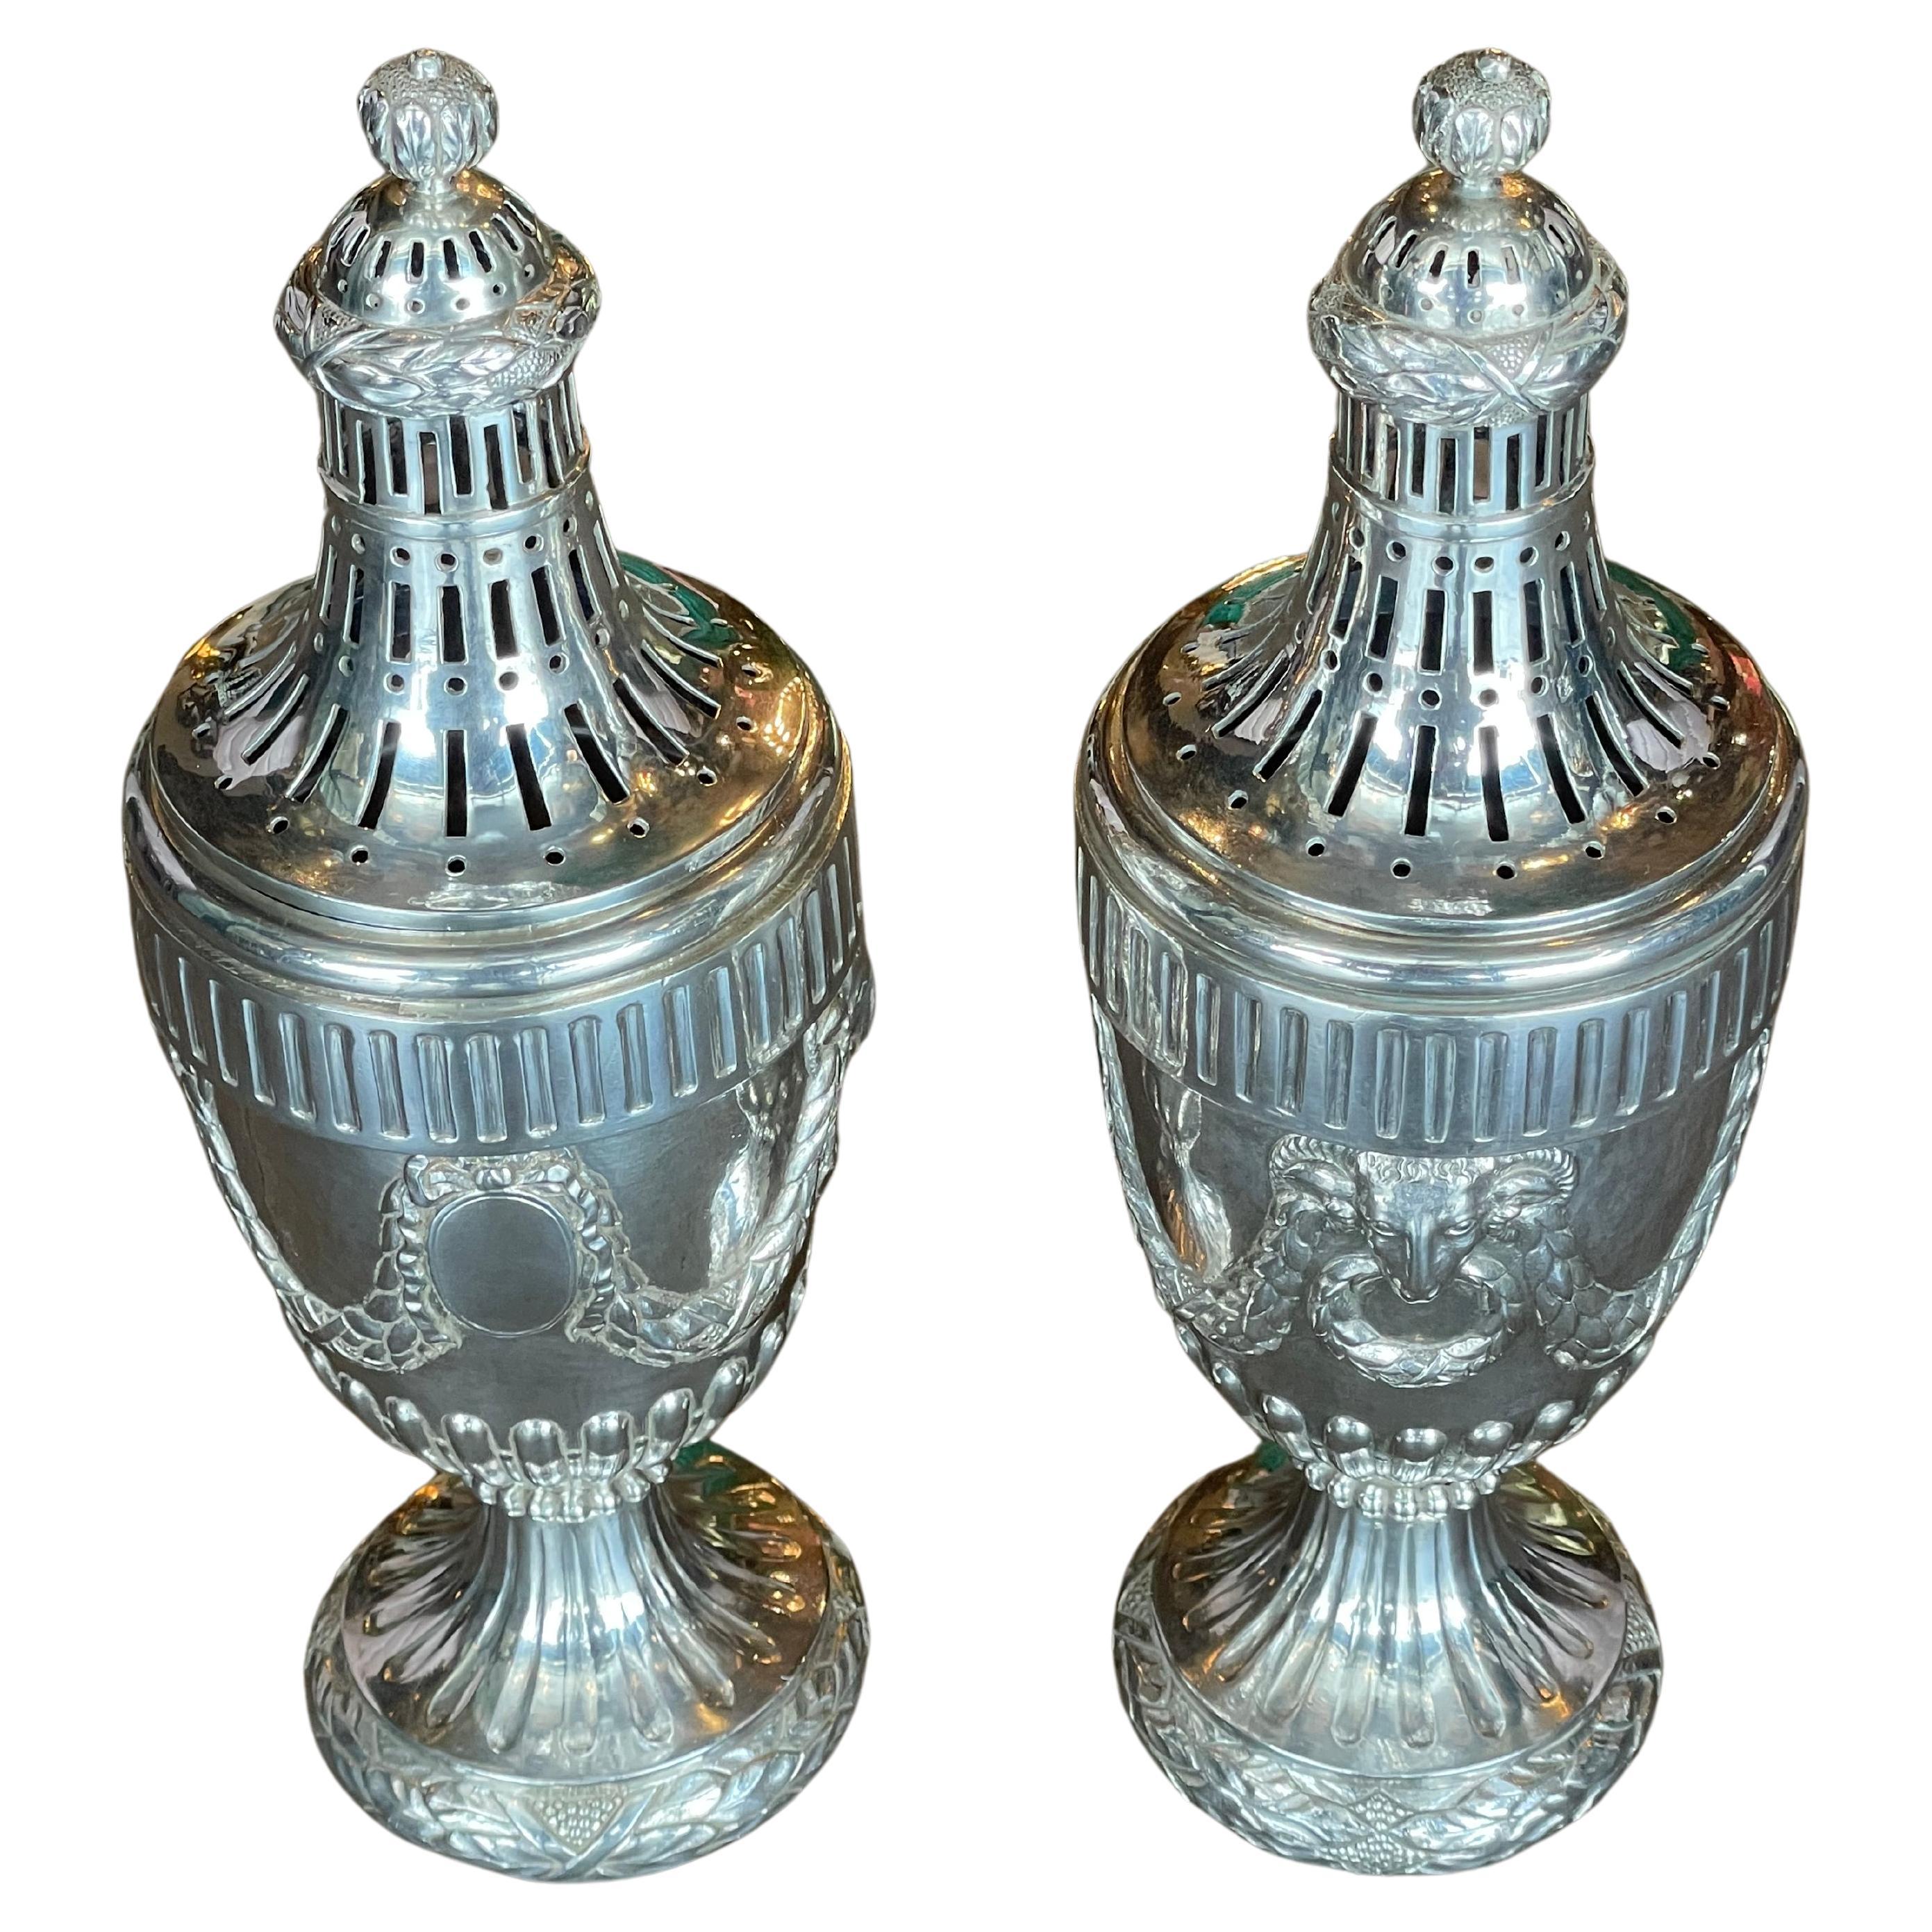 Ein Paar niederländischer neoklassizistischer silberner Potpourri-Urnen, Den Haag, Ende 18.
Quellenangabe: Martyn Lawrence Bullard
Gepunztes Sterlingsilber